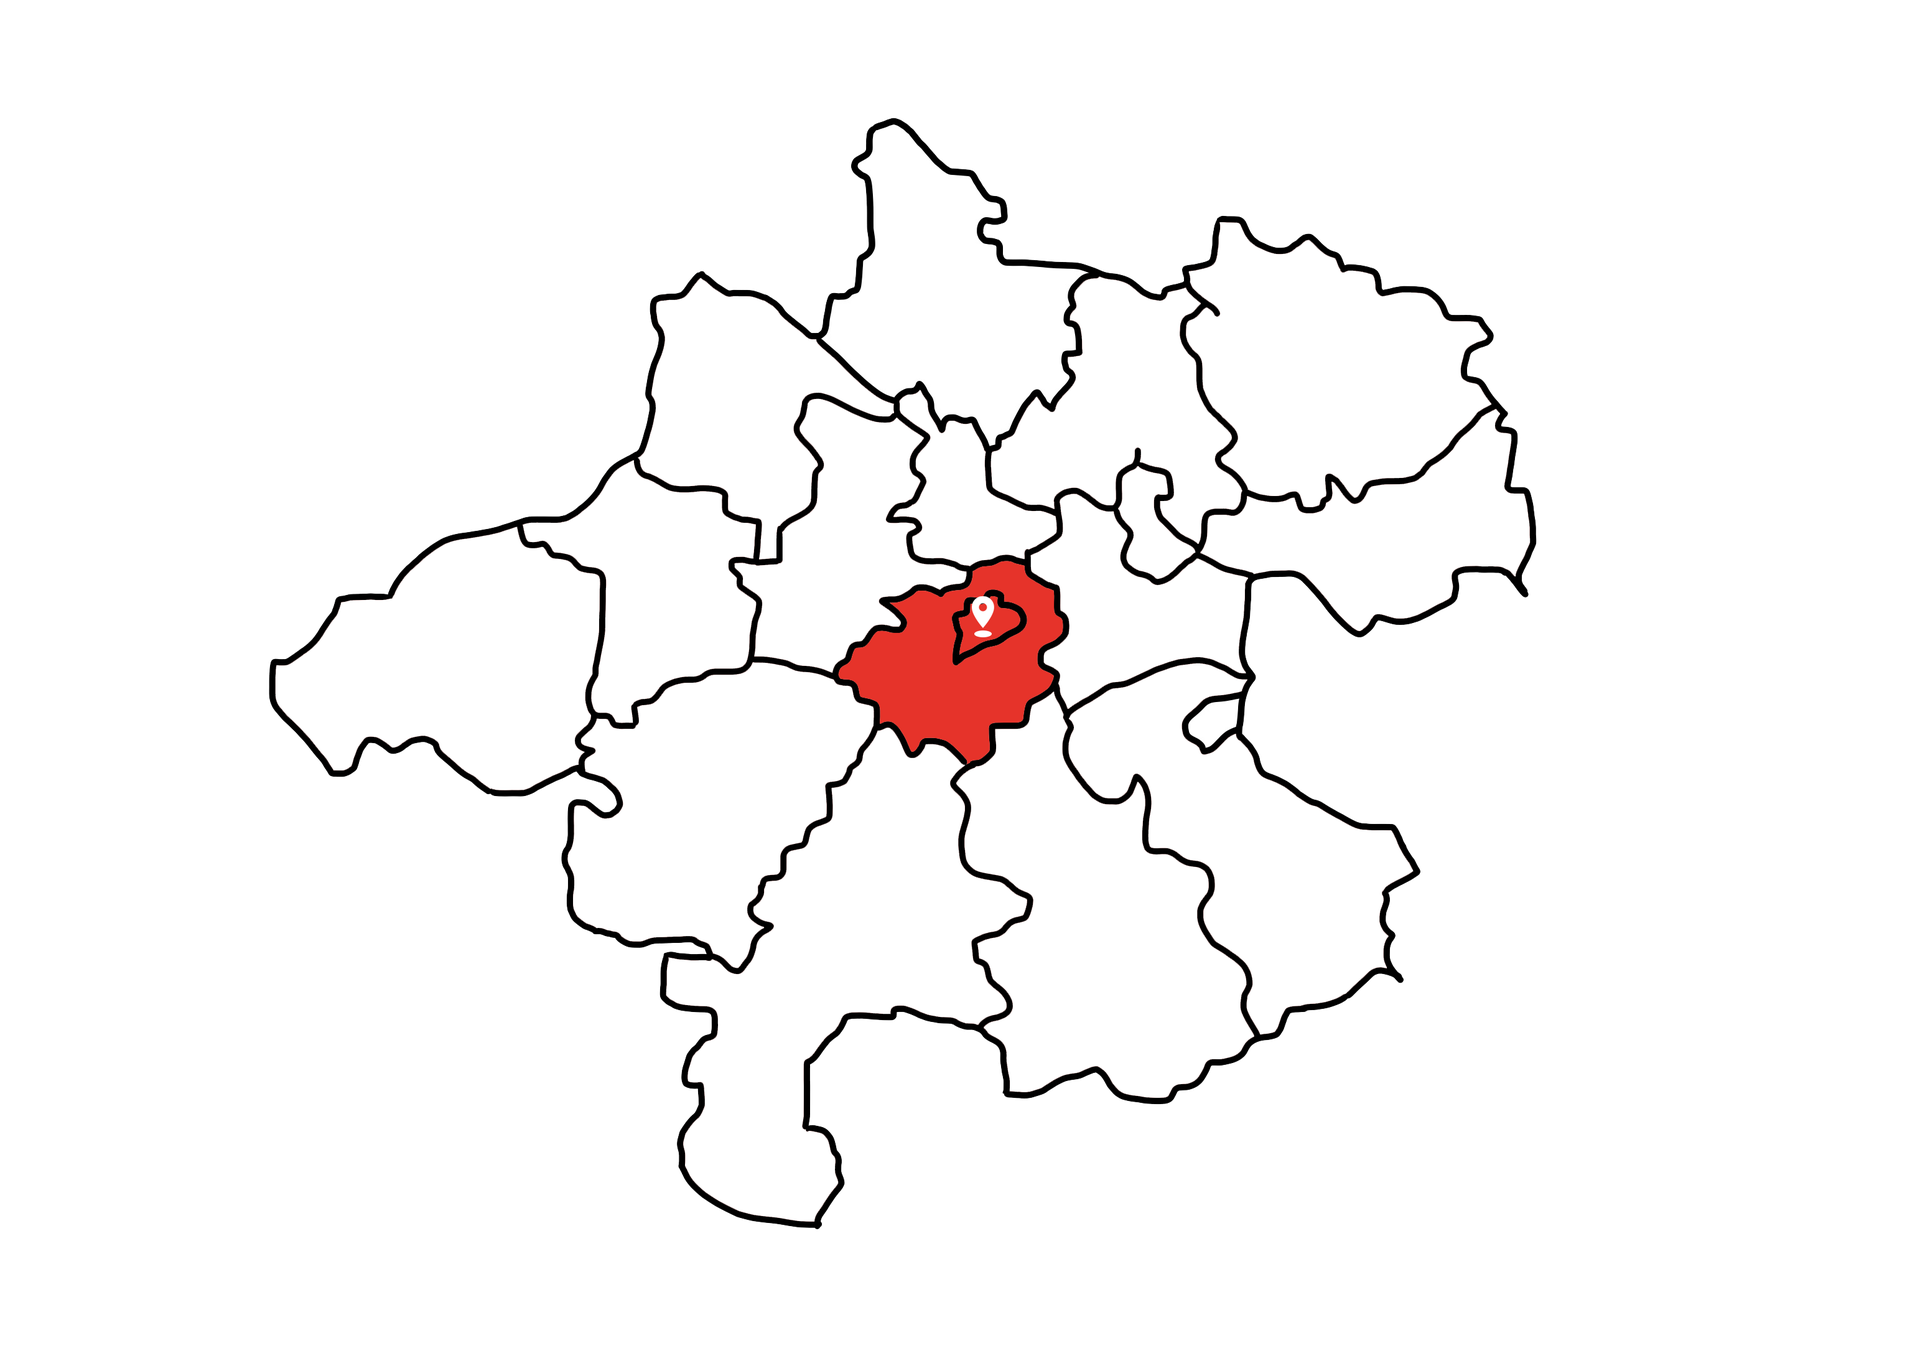 Eine Landkarte die Oberösterreich zeigt. Die Bezirke Wels und Wels-Land sind rot markiert. Die restlichen Bezirke sind weiß.